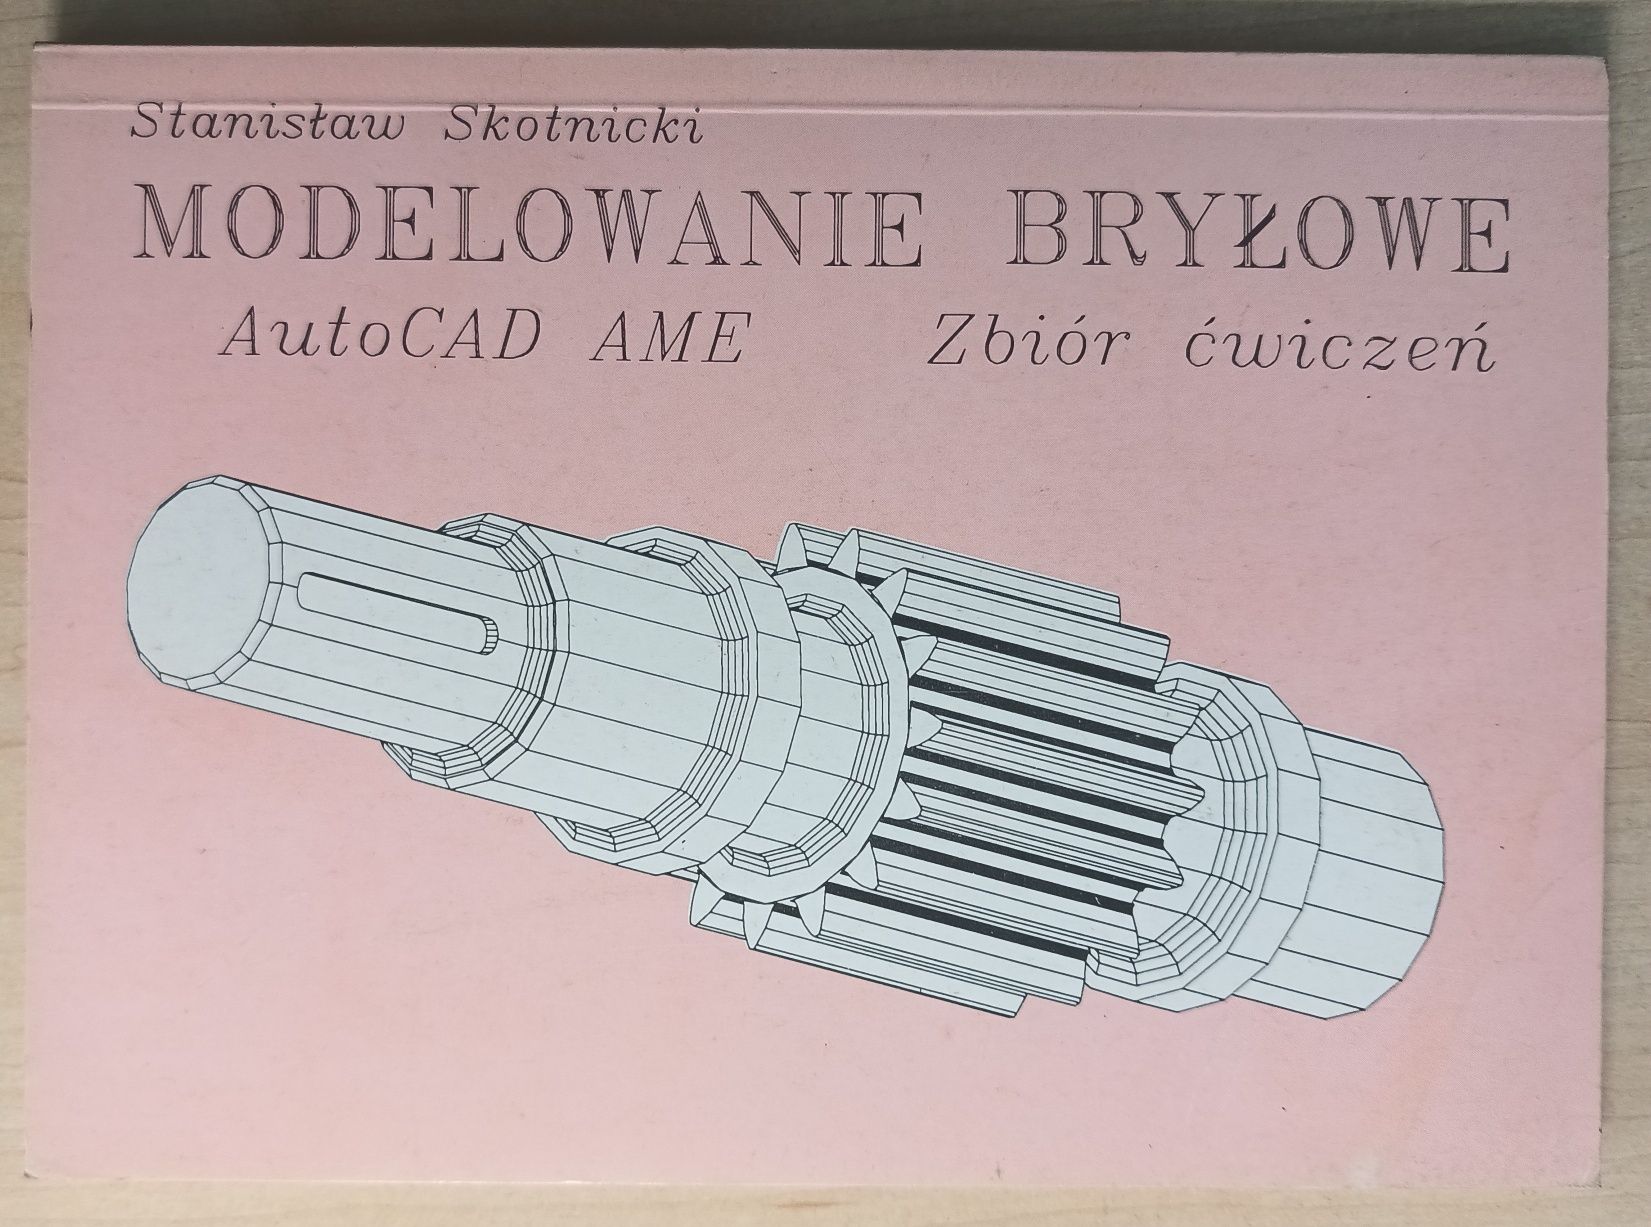 Modelowanie bryłowe AutoCAD AME Zbiór ćwiczeń Stanisław Skotnicki